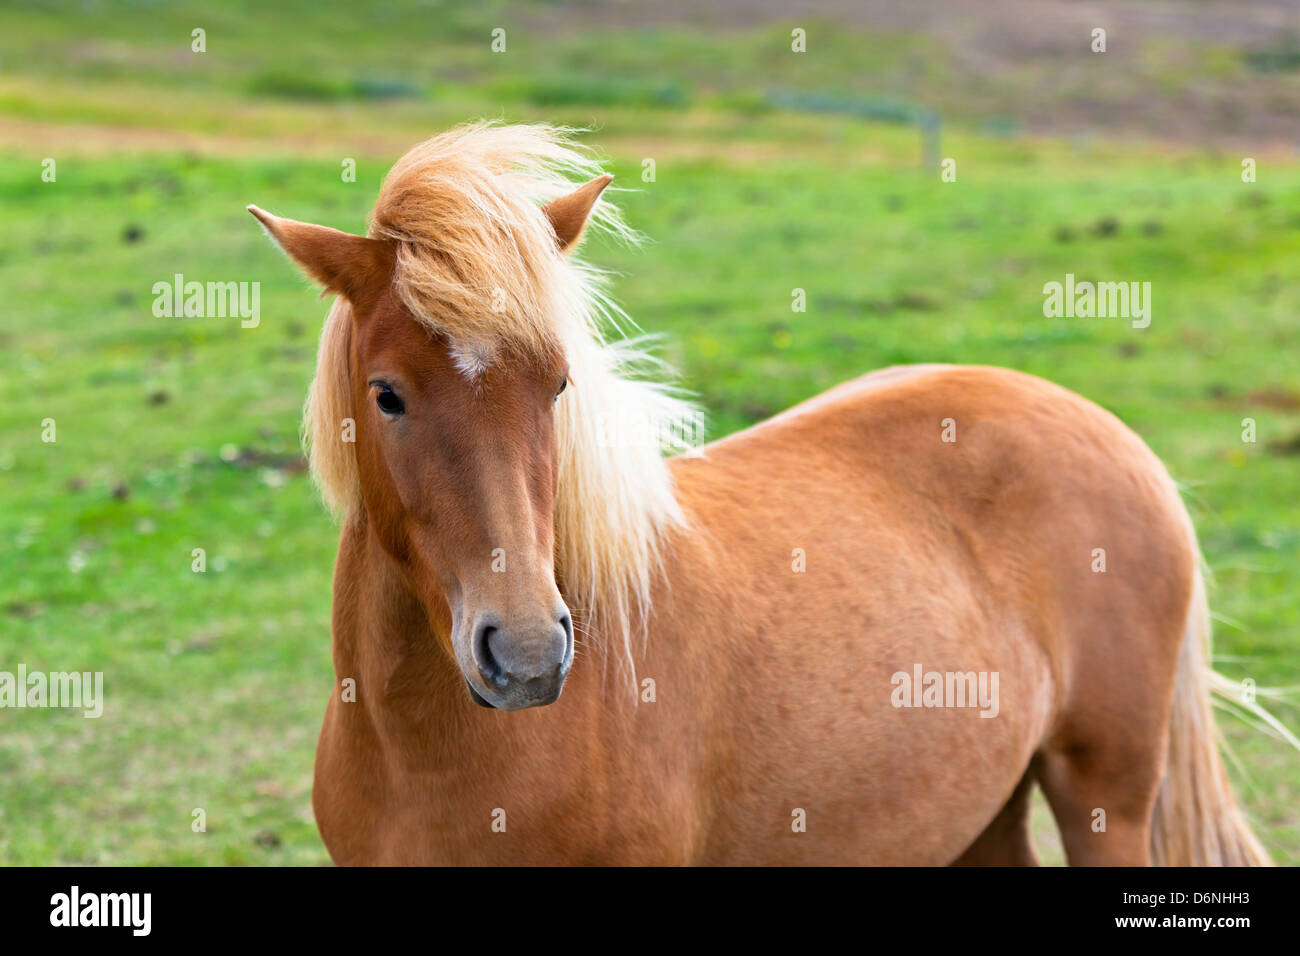 Marrone a cavallo in un campo Verde di erba. Inquadratura orizzontale Foto Stock